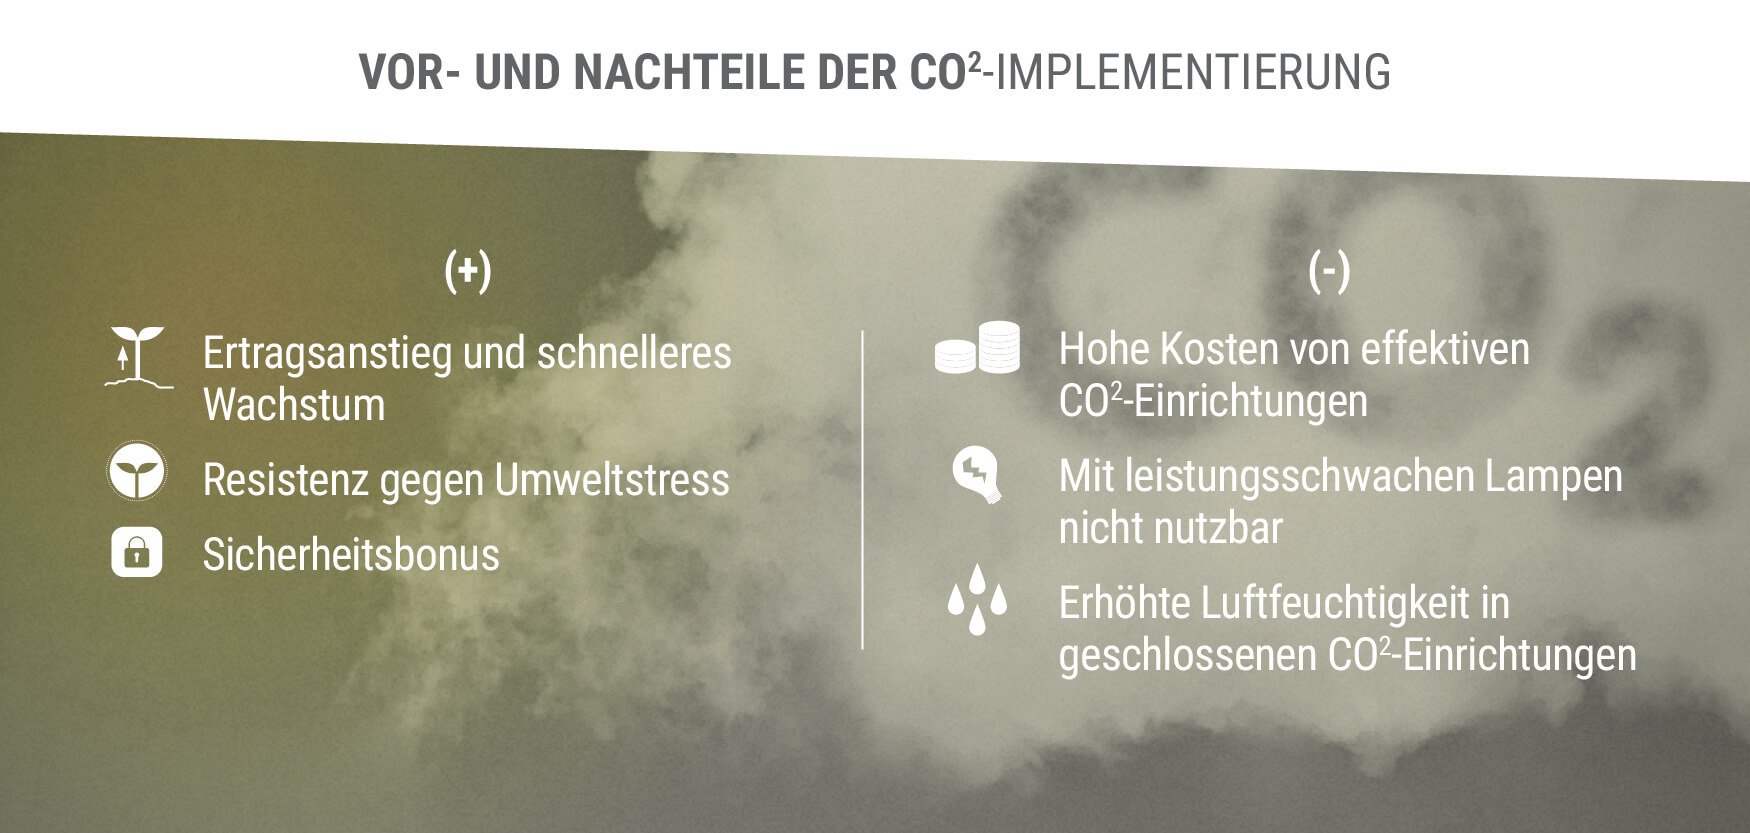 Vor- und Nachteile der CO2-Implementierung